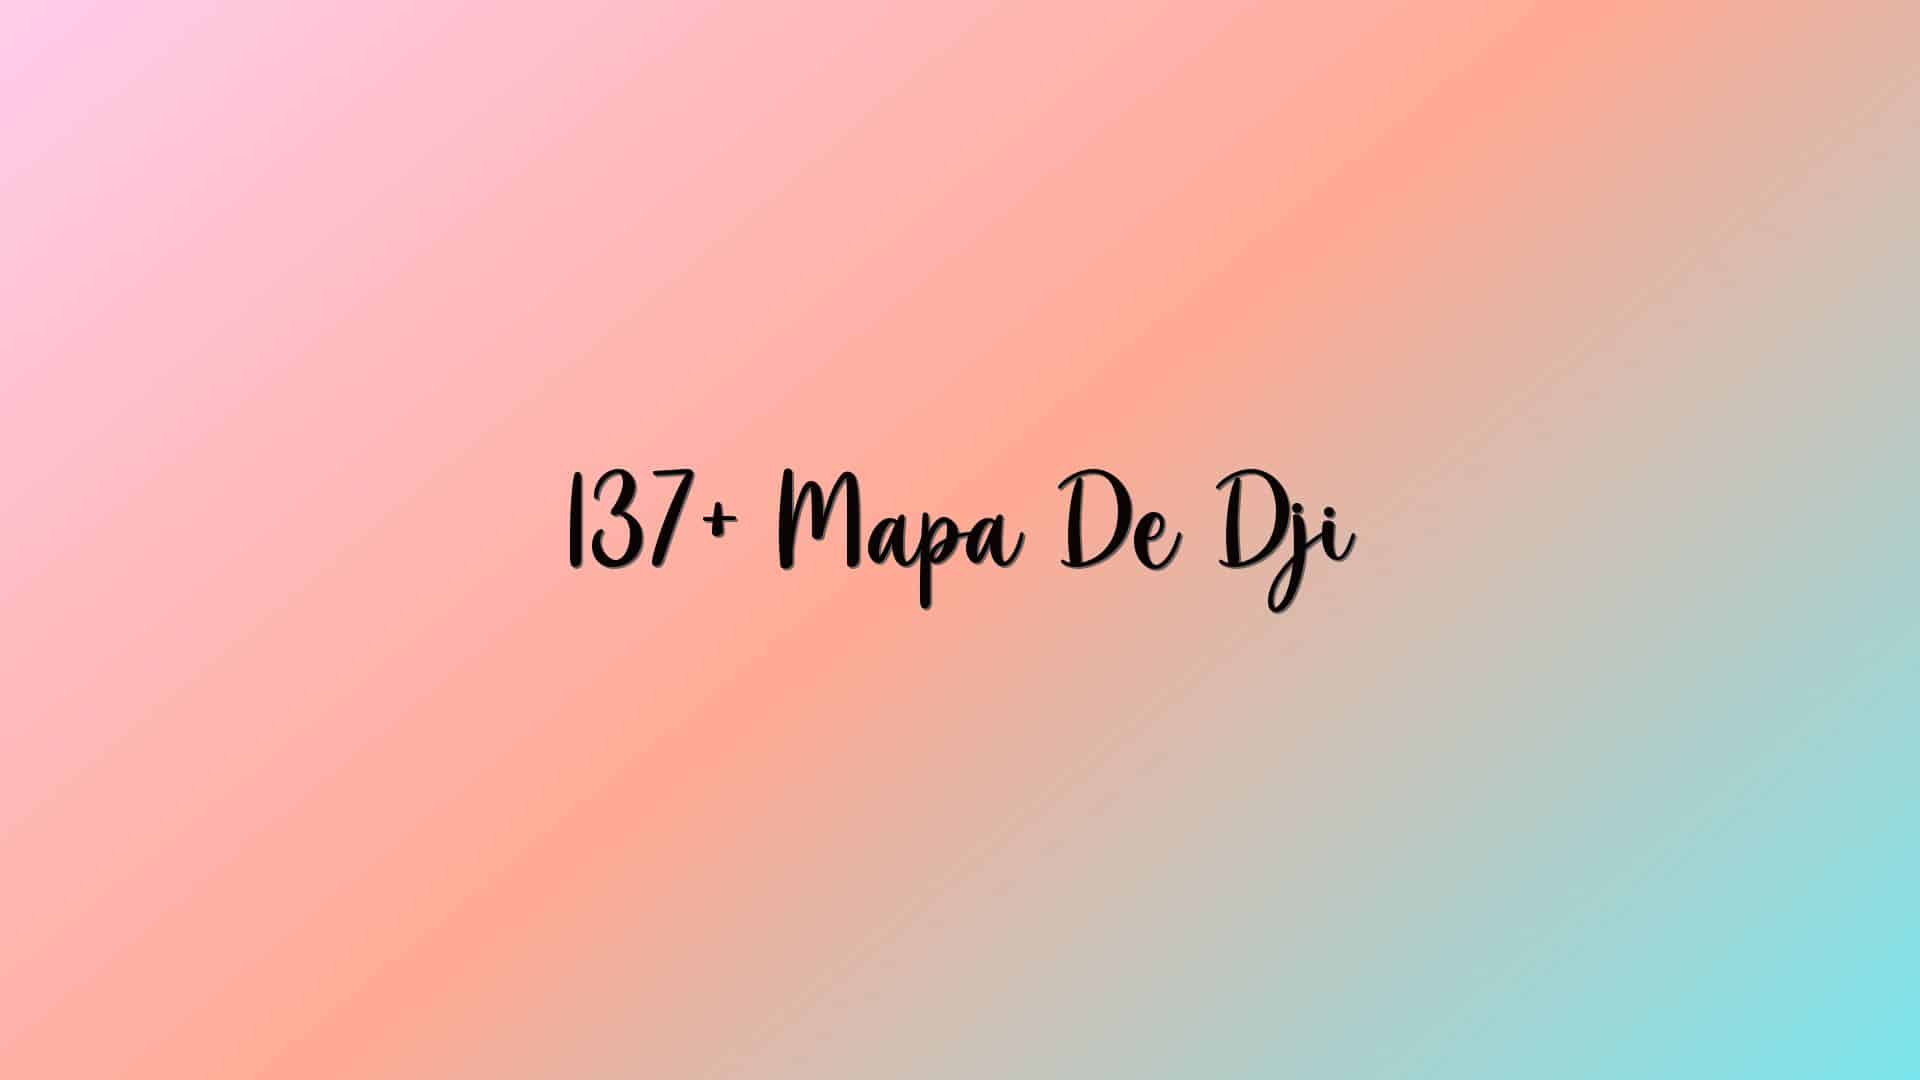 137+ Mapa De Dji